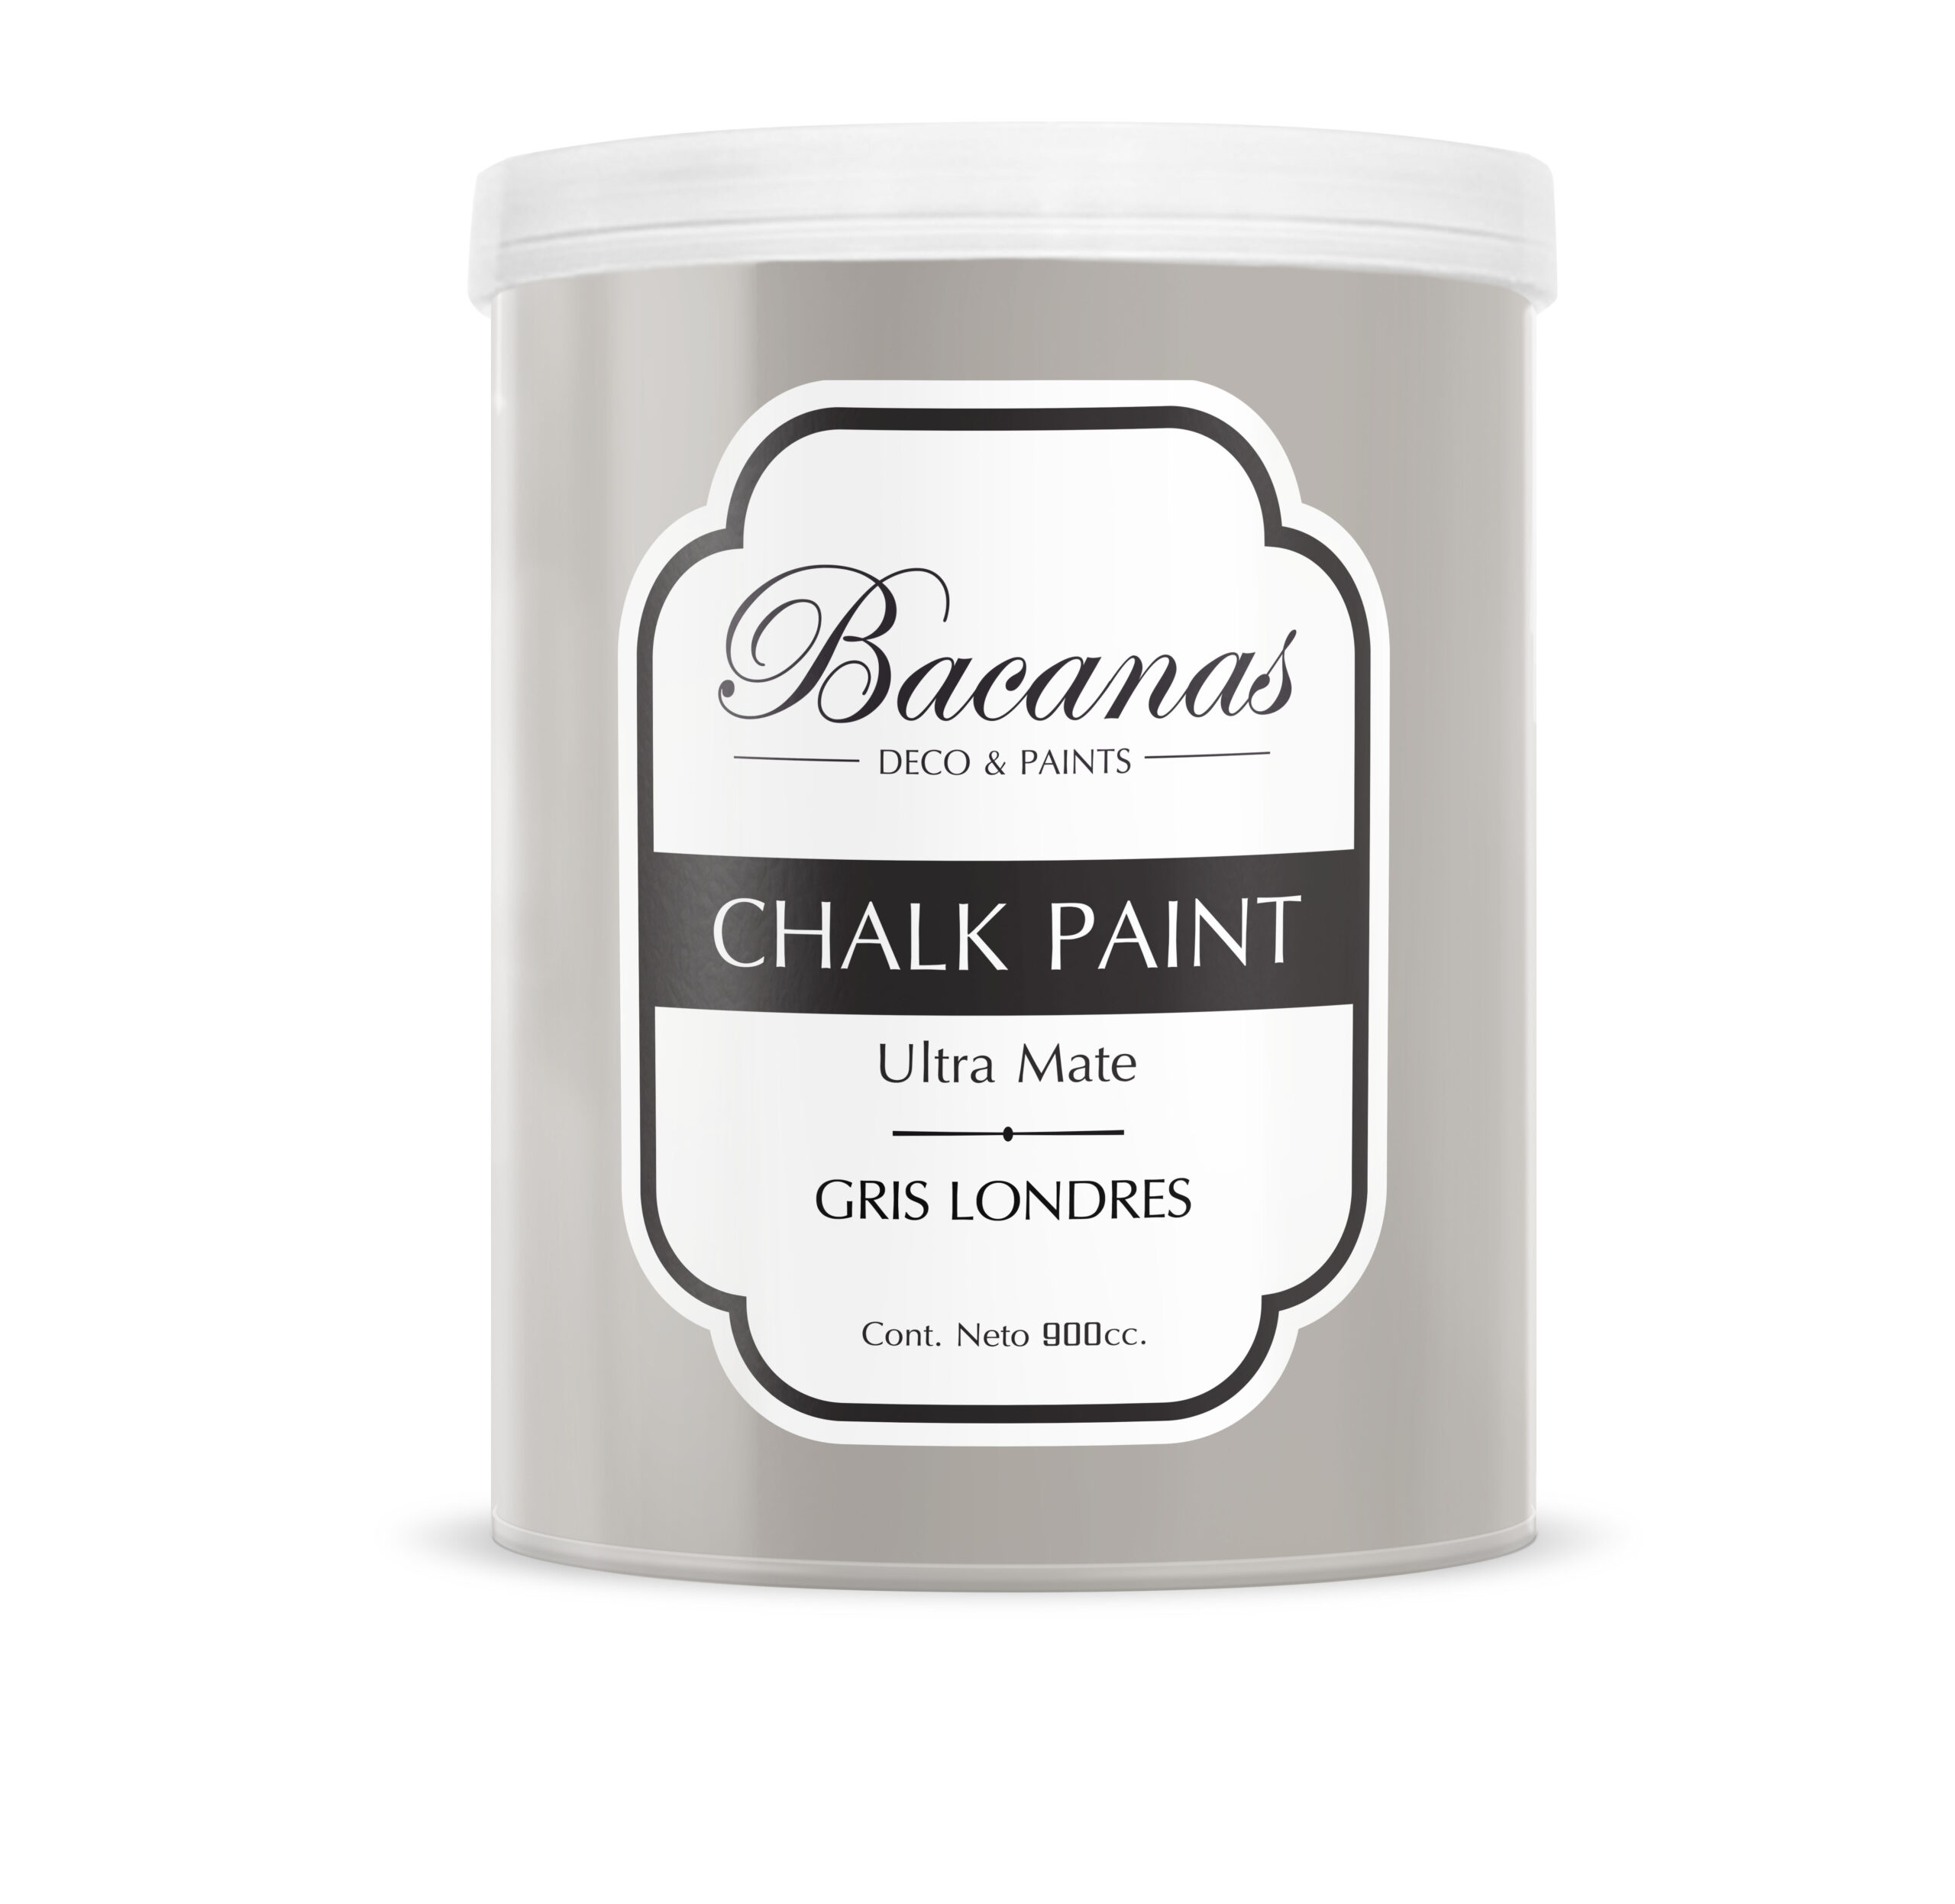 Chalk Paint – Gris Londres 900cc